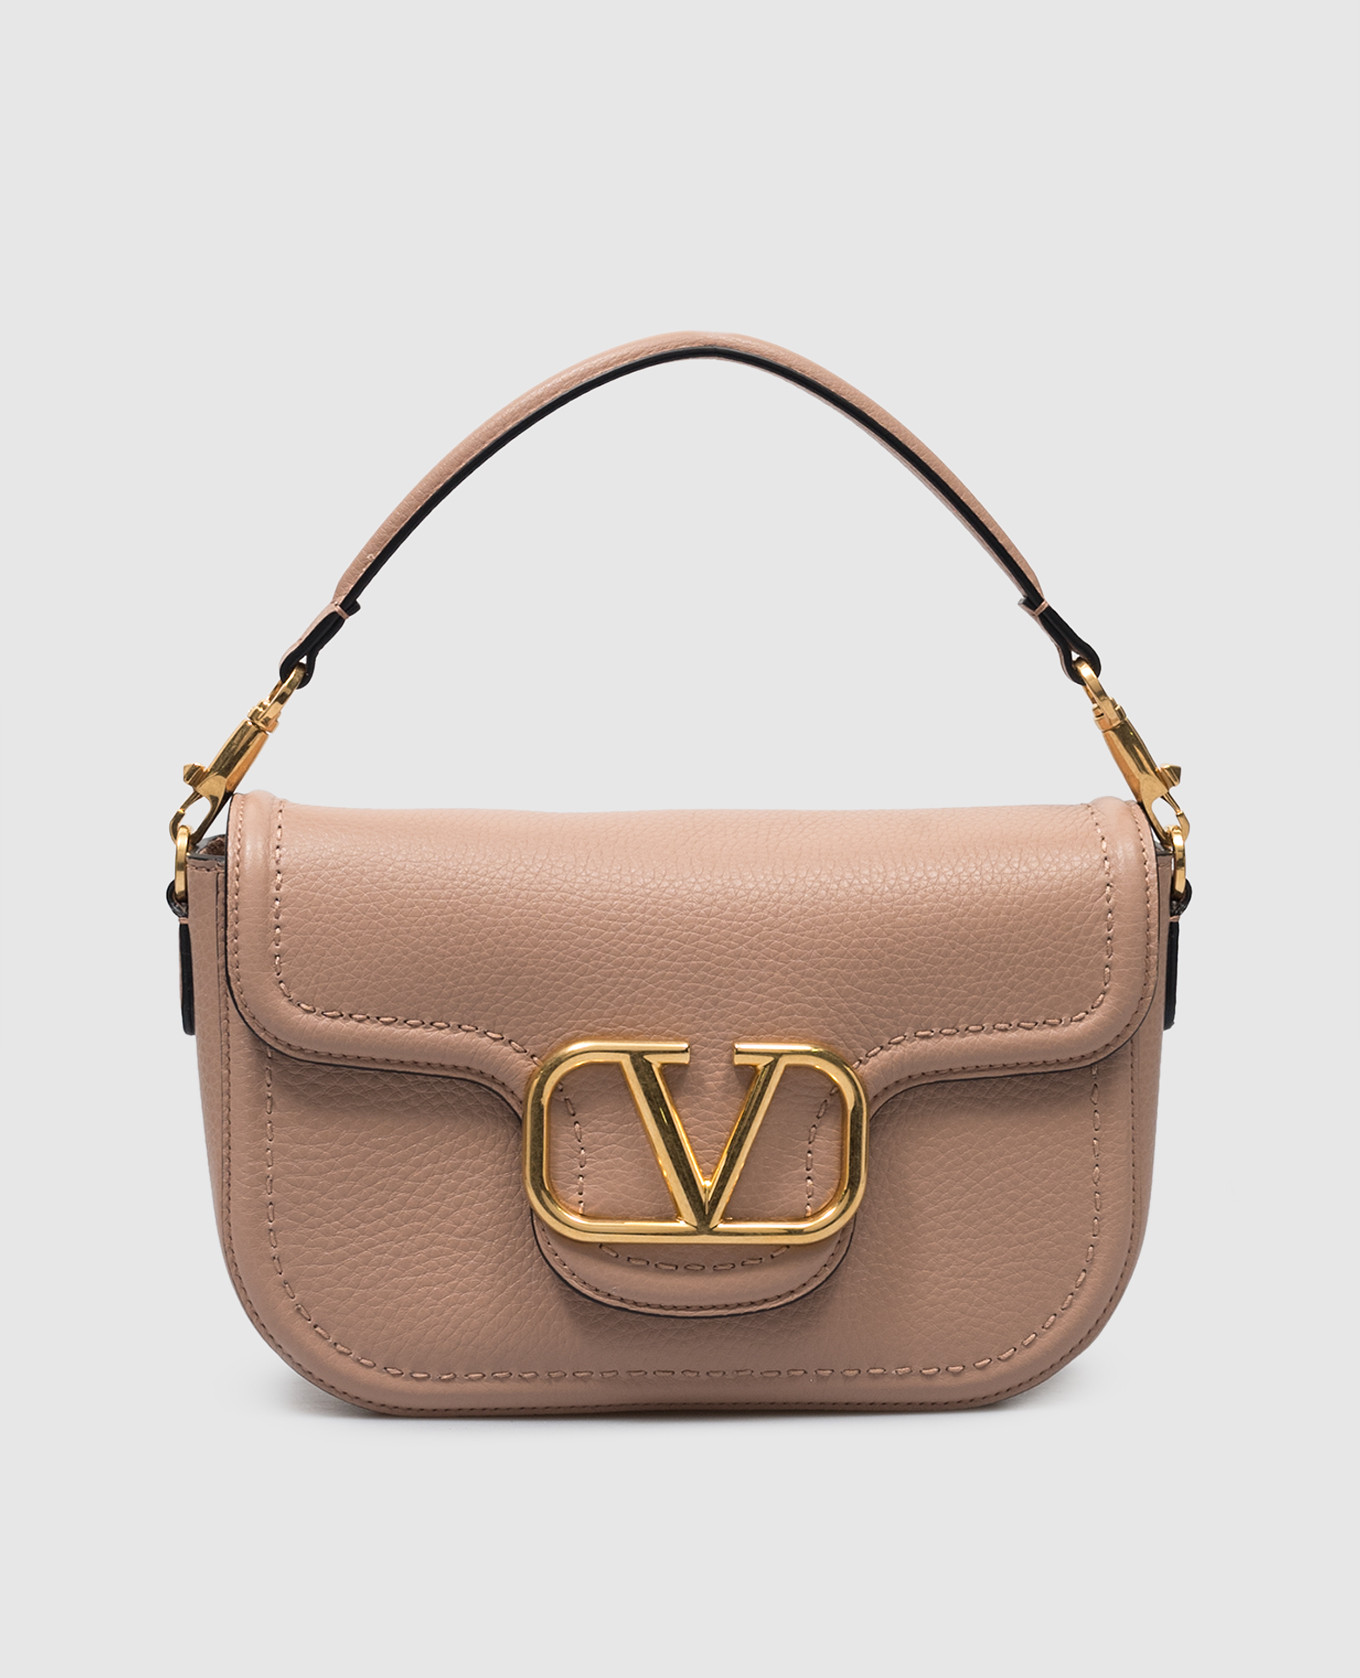 VLogo pink leather messenger bag